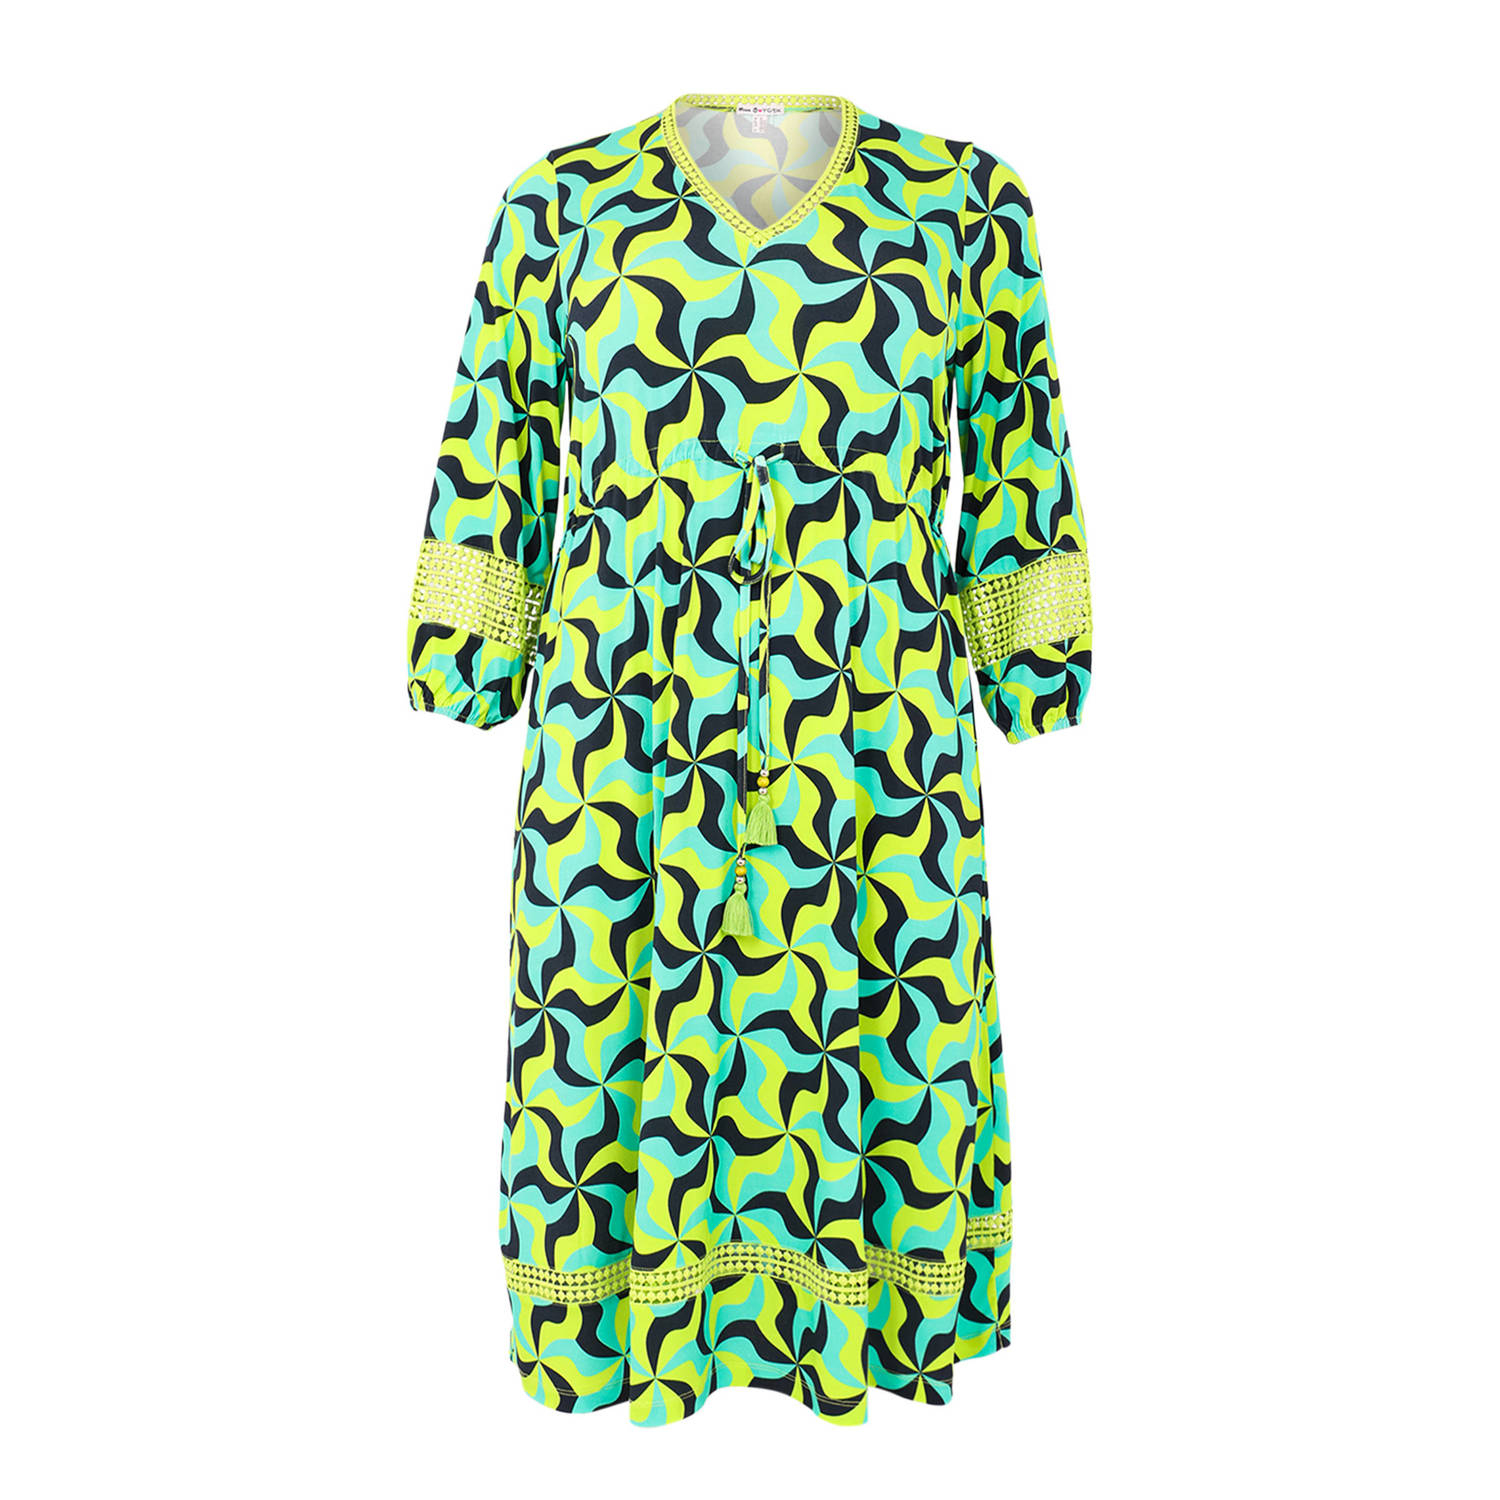 Yoek jurk met all over print turquoise geel blauw